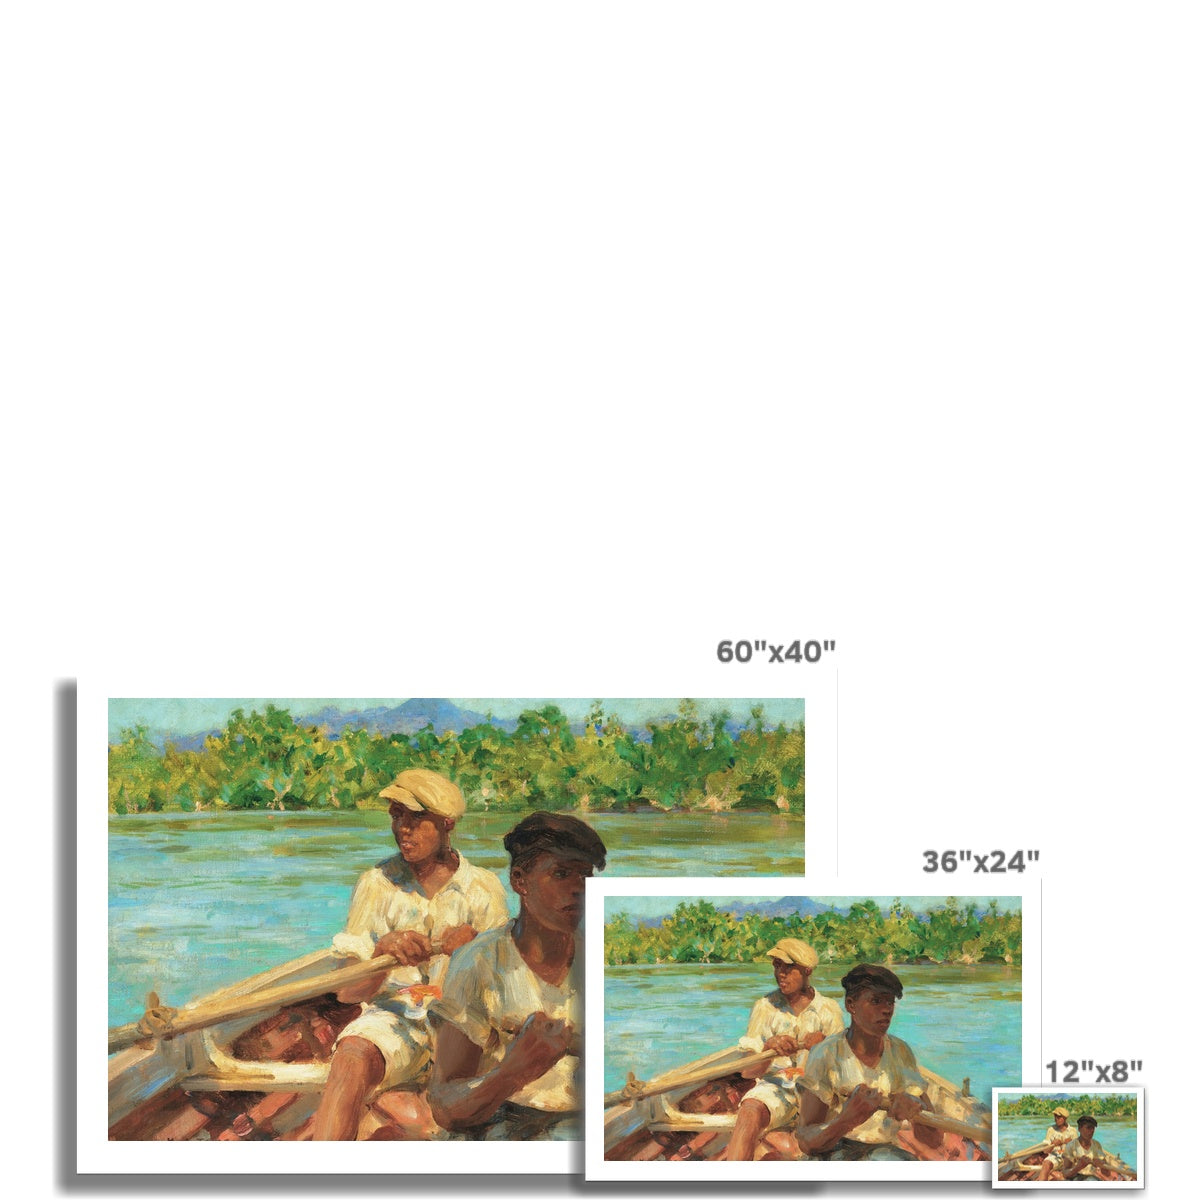 Henry Scott Tuke Open Edition Art Print. Black River Boatmen, Jamaica. Art Gallery Historic Art